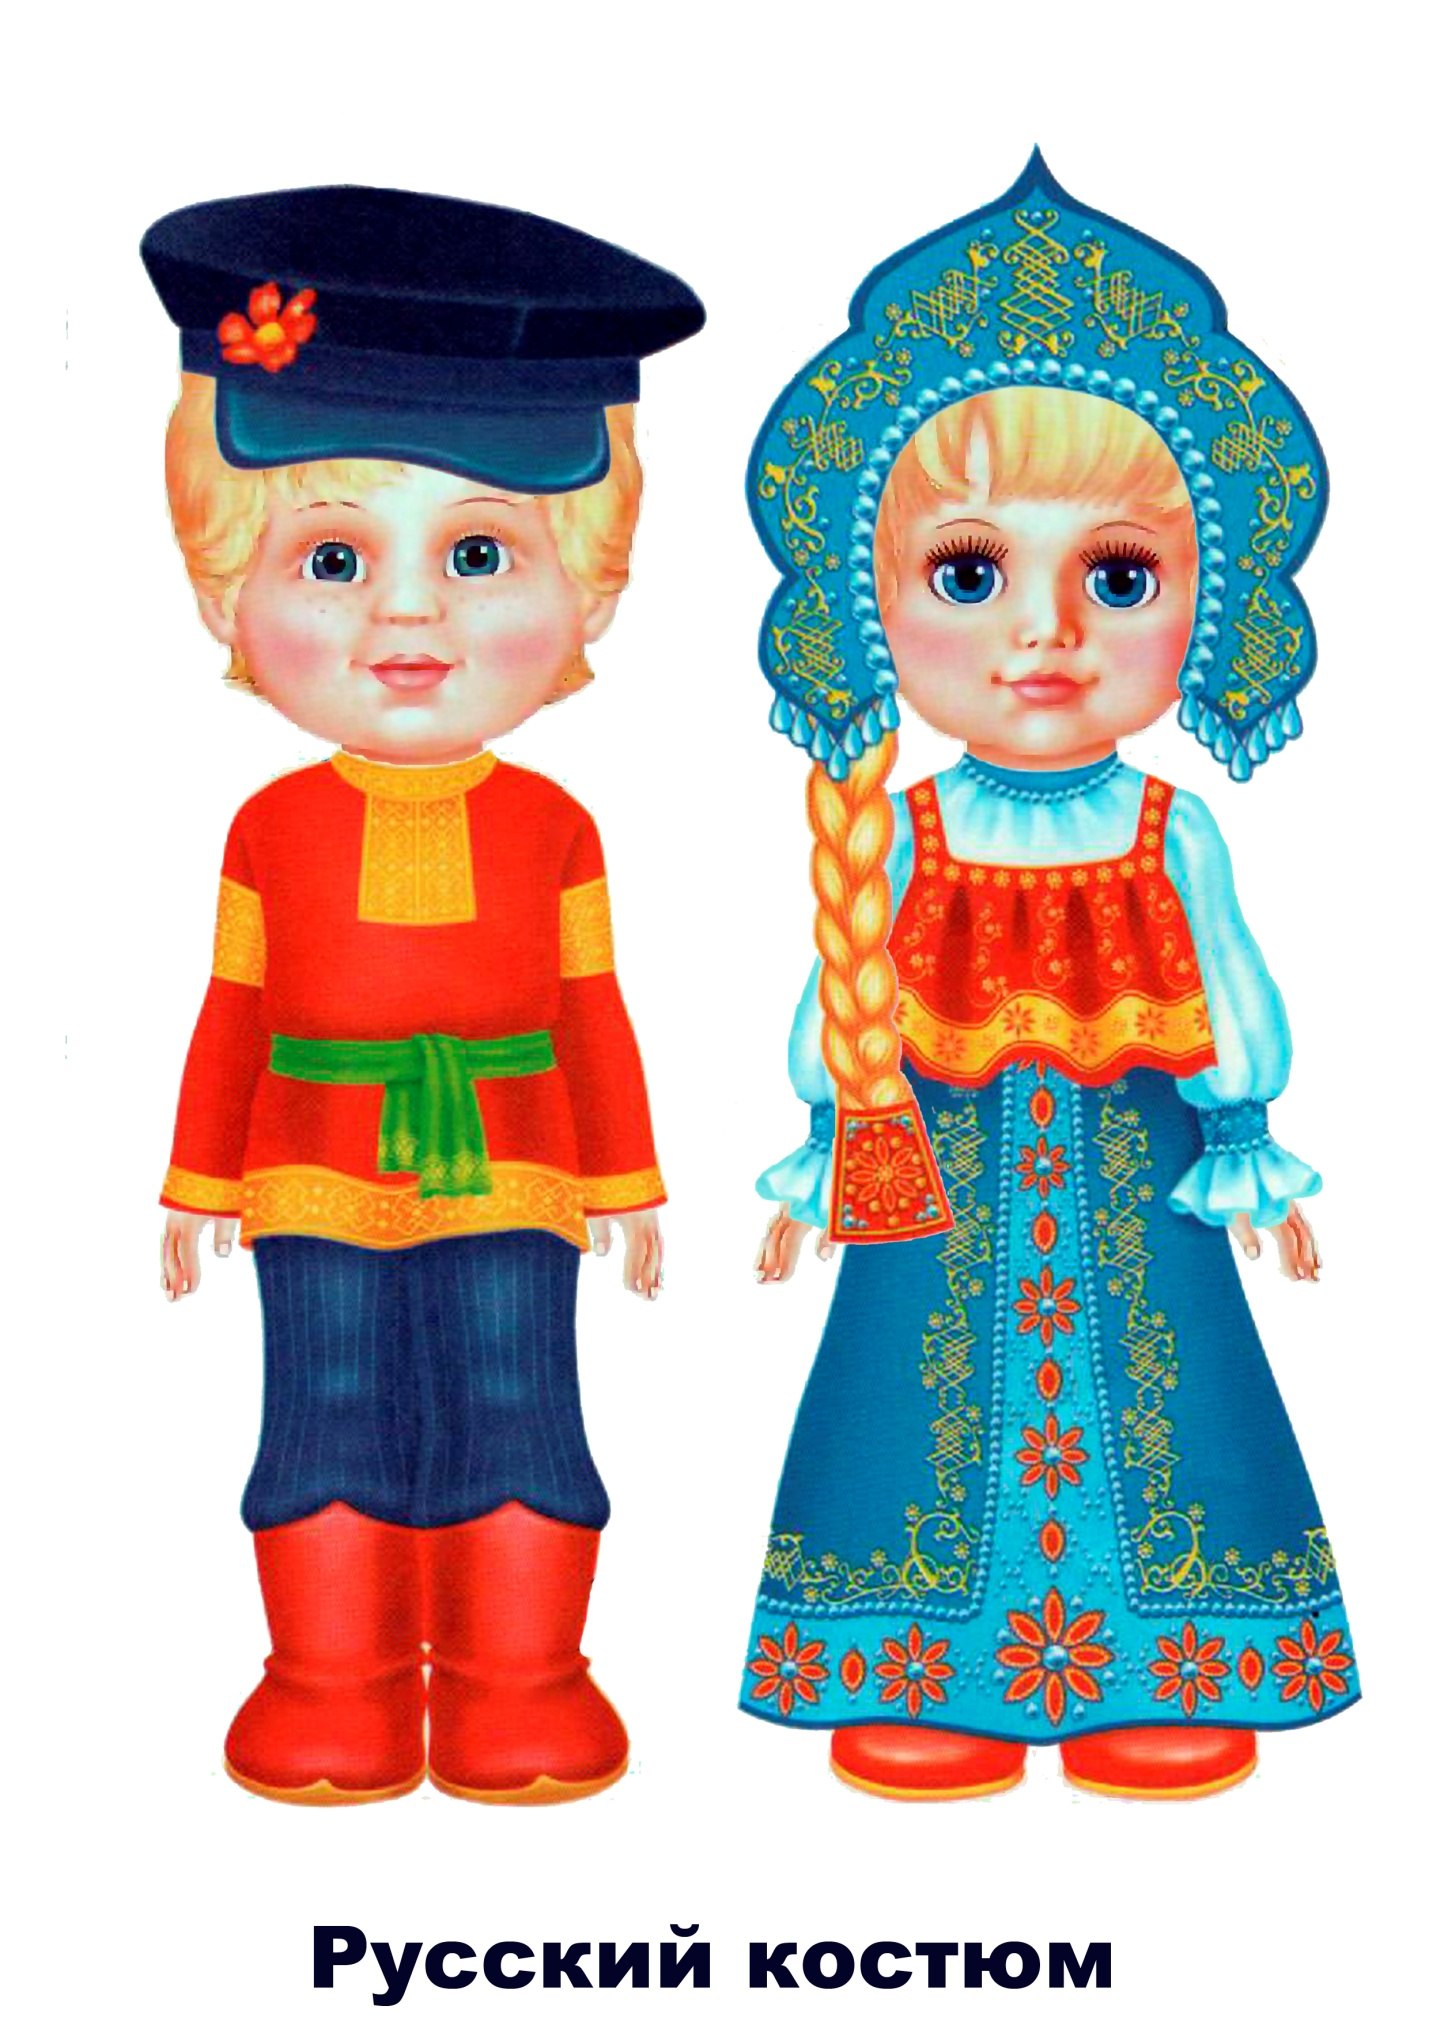 Национальные костюмы народов России